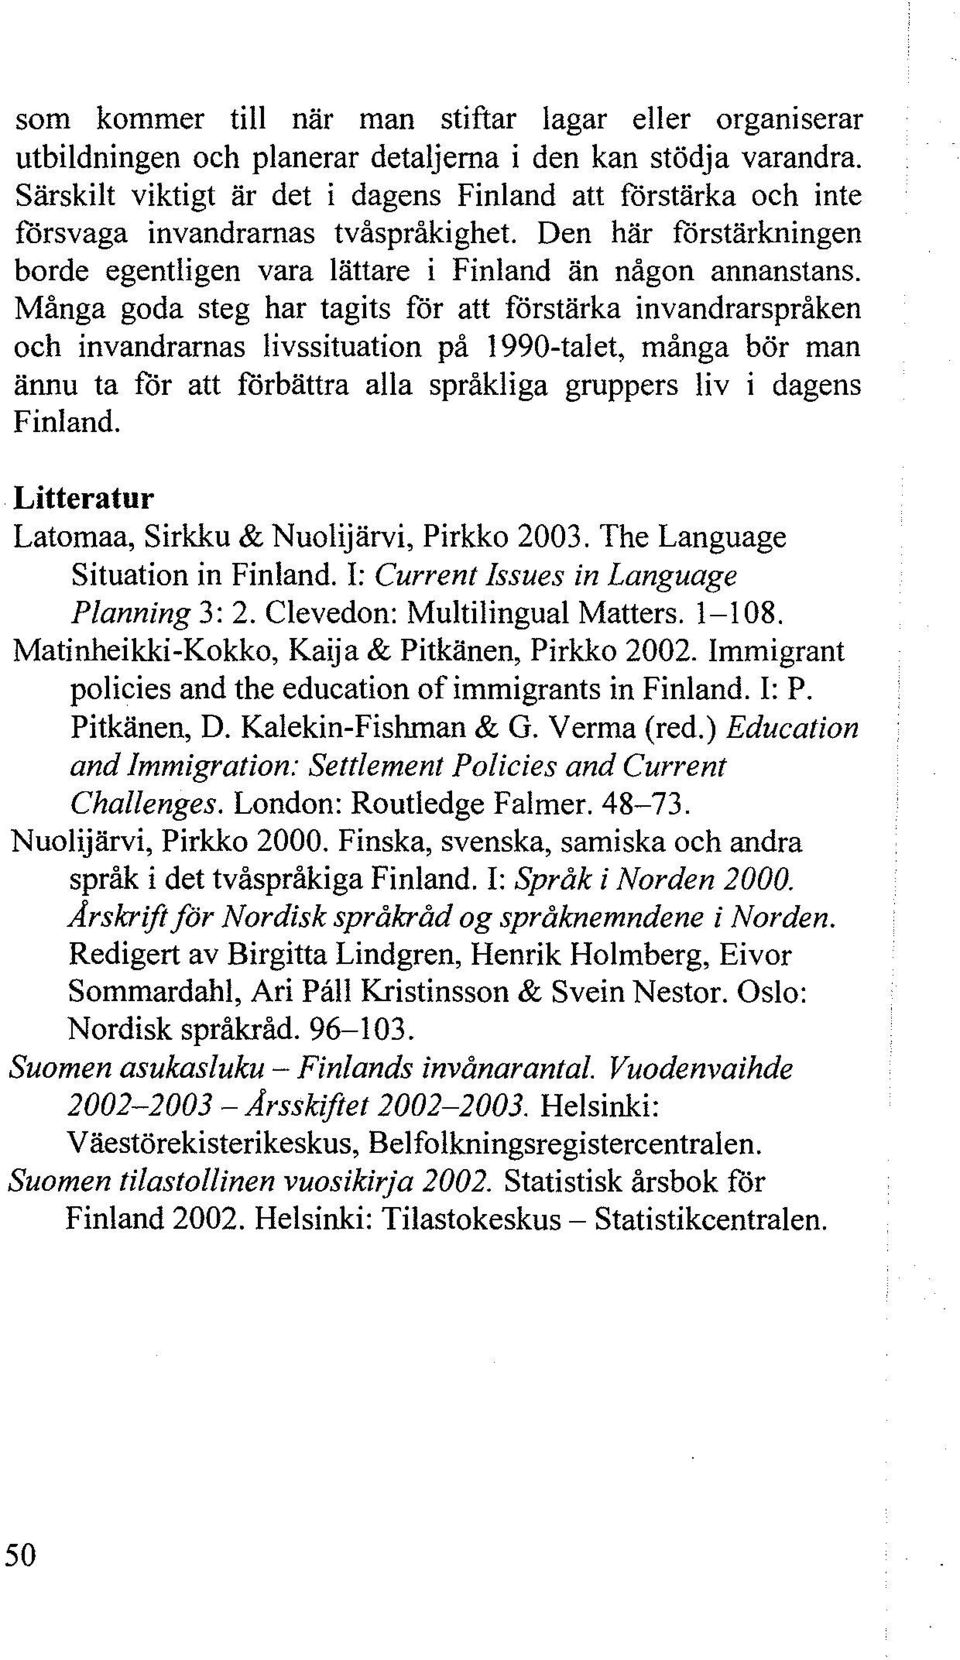 Många goda steg har tagits för att förstärka invandrarspråken och invandrarnas livssituation på 1990-talet, många bör man ännu ta för att förbättra alla språkliga gruppers liv i dagens Finland.